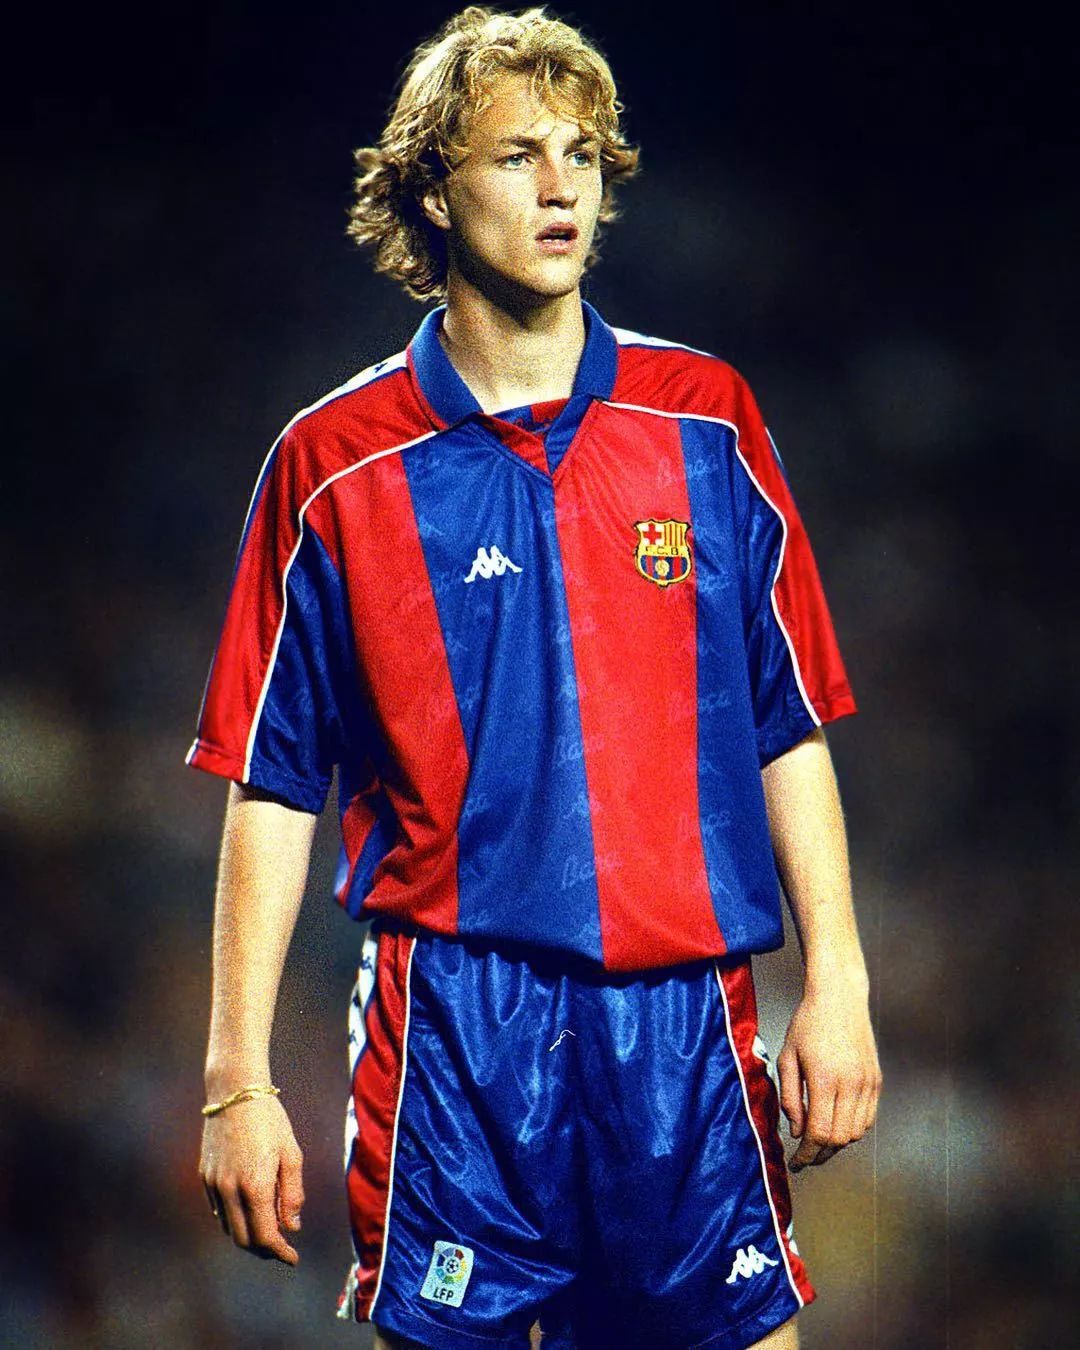 1988年,由于其父亲约翰·克鲁伊夫前往巴塞罗那足球俱乐部执教,小